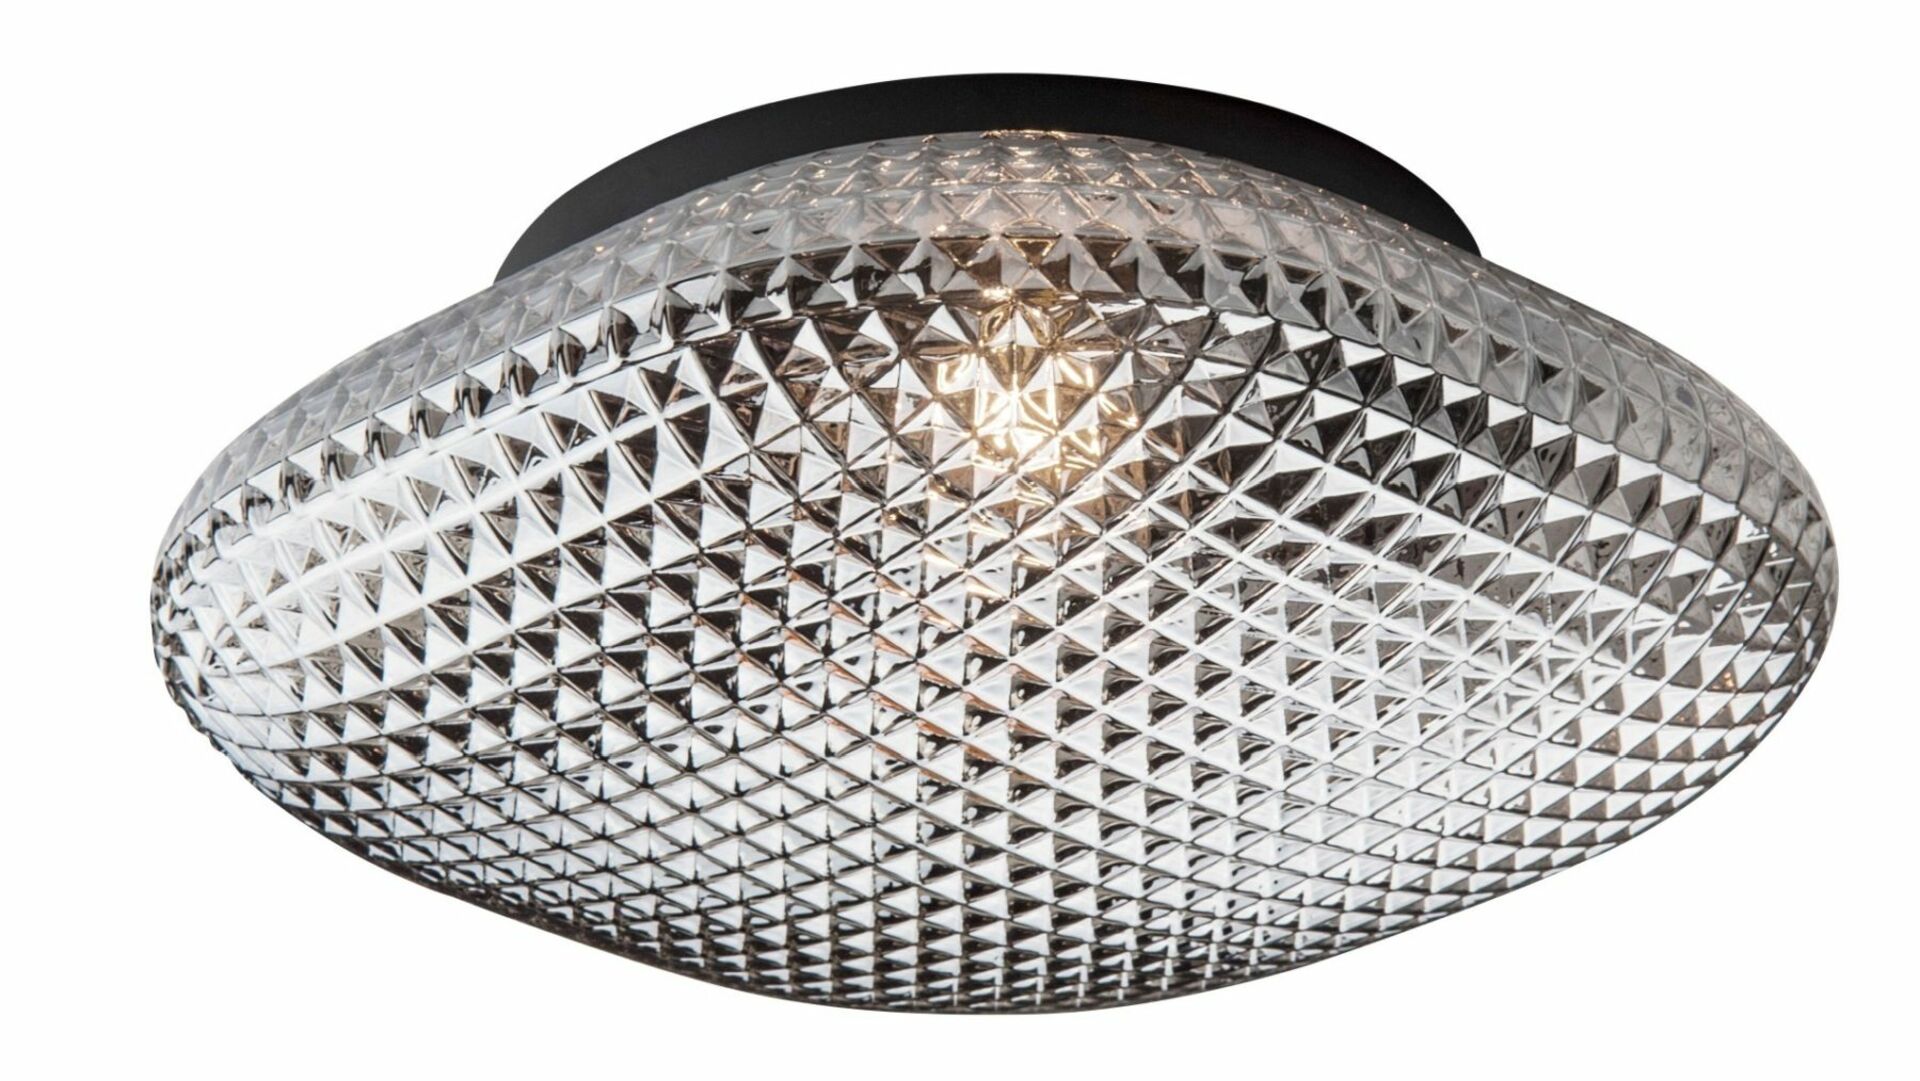 Nova Luce Stylové stropní svítidlo Sens s vyšším stupněm krytí - 1 x 60 W, šedá / černý kov NV 838124